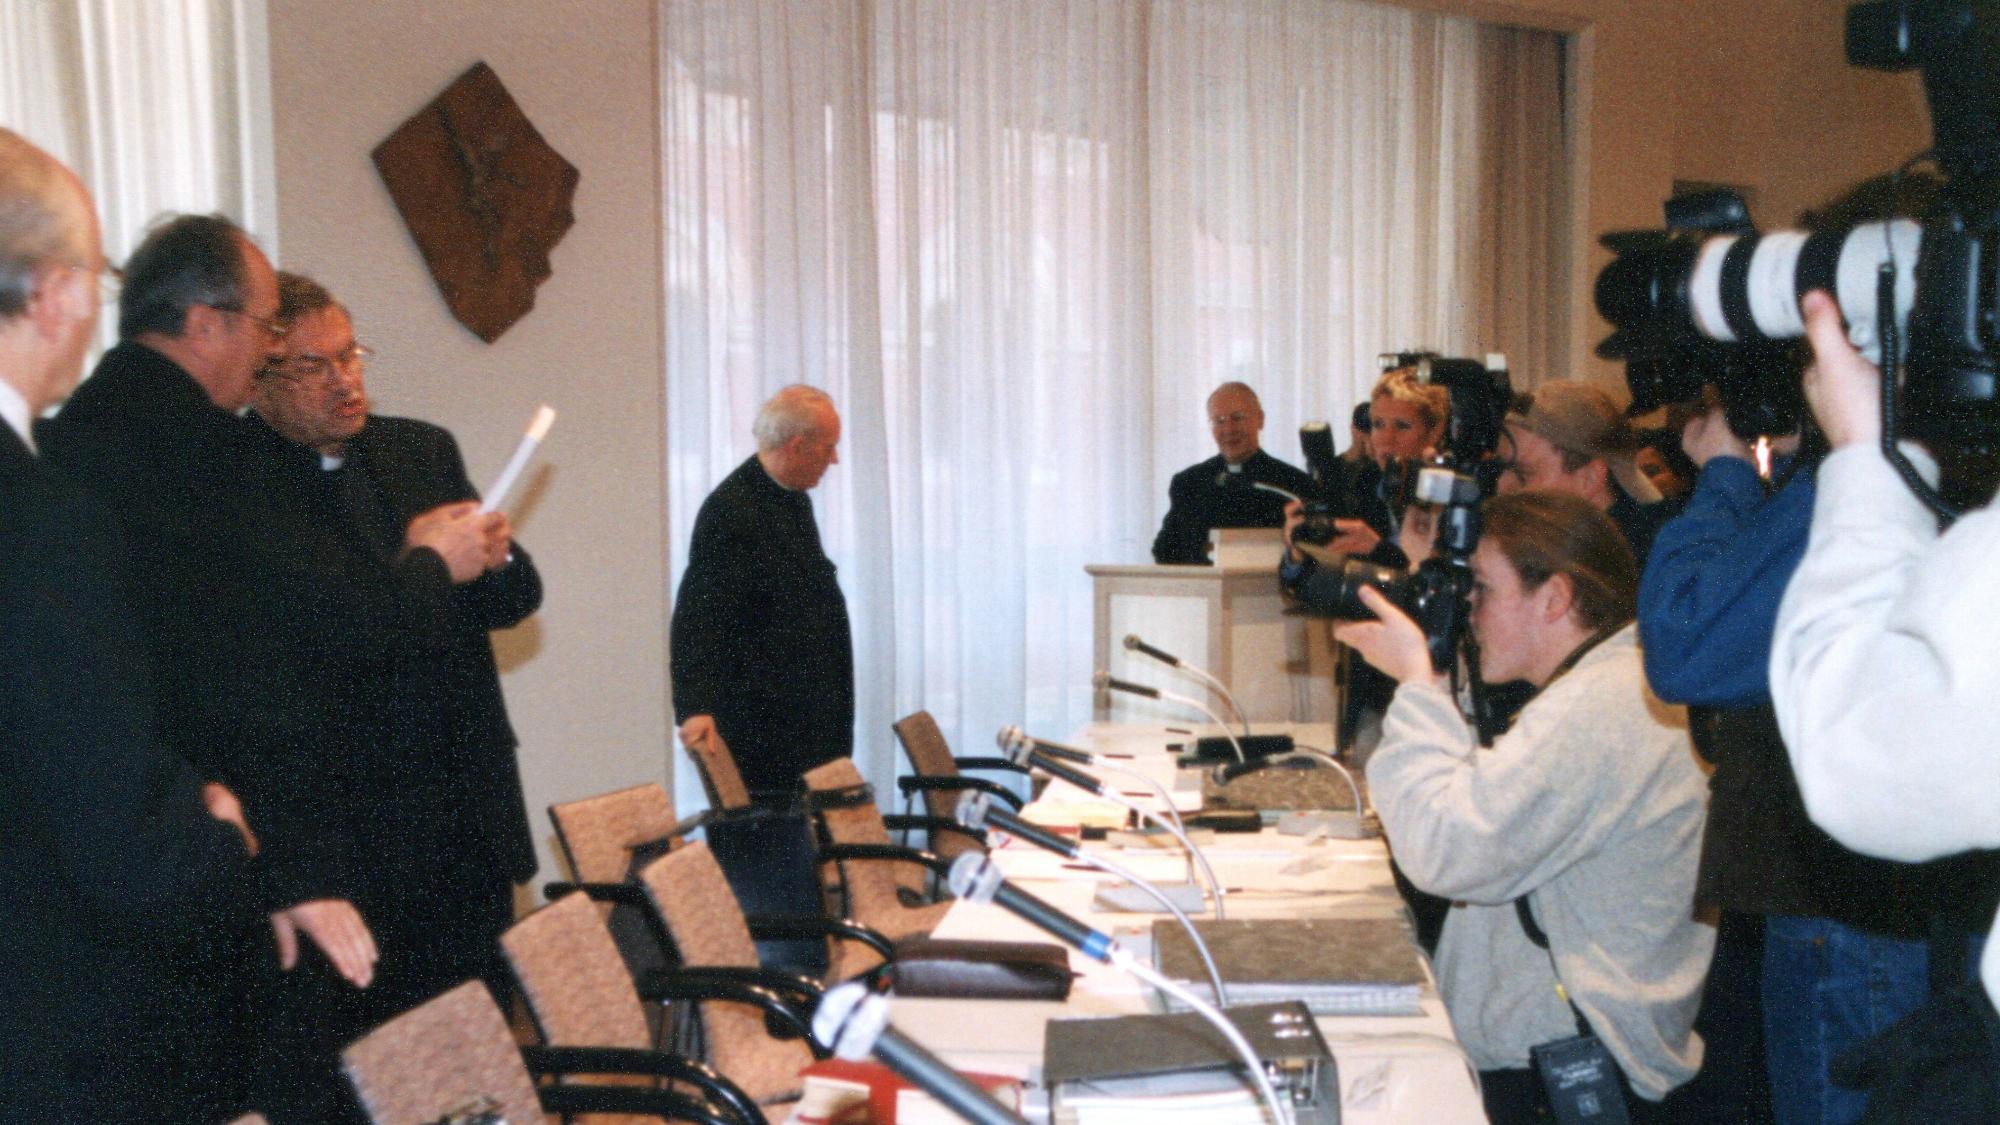 Mainz, 13.3.2000: Bereits vor 20 Jahren war das mediale Interesse an der Frühjahrs-Vollversammlung groß.